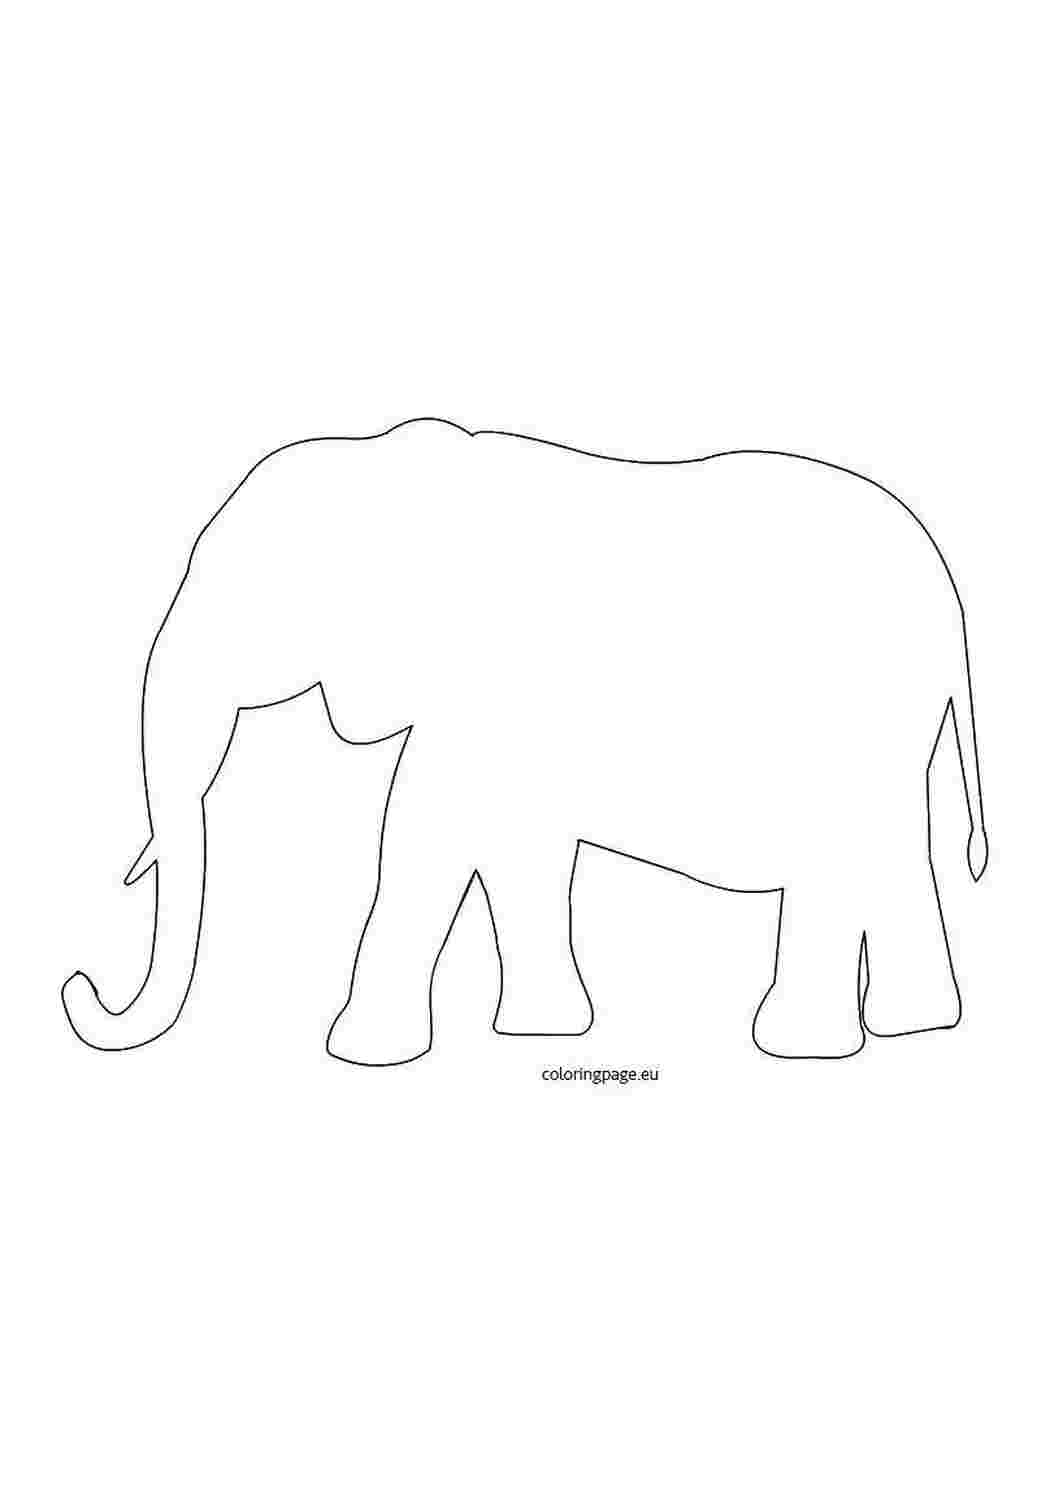 Трафарет слона для аппликации